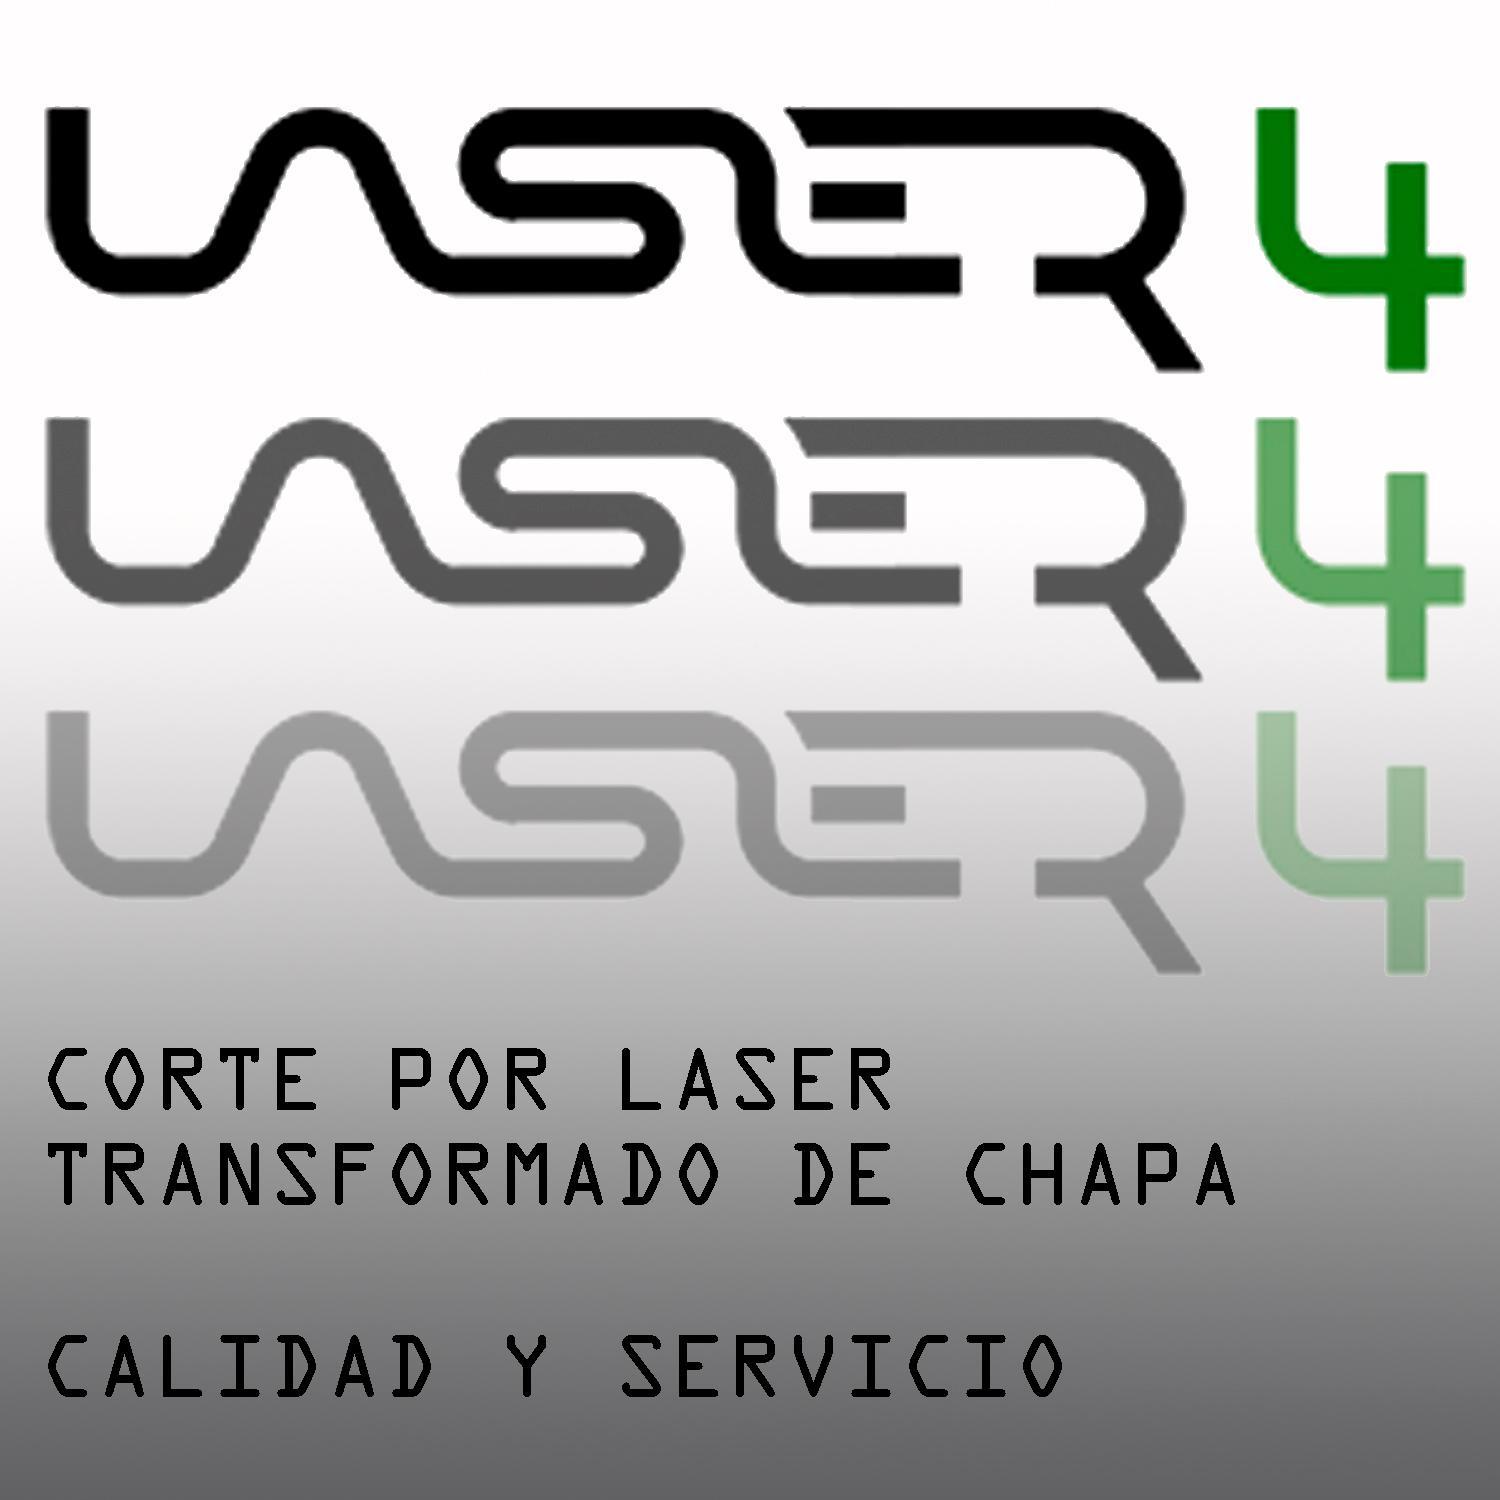 Empresa dedicada al CORTE POR LASER y transformado de chapa. info@lasercuatro.com